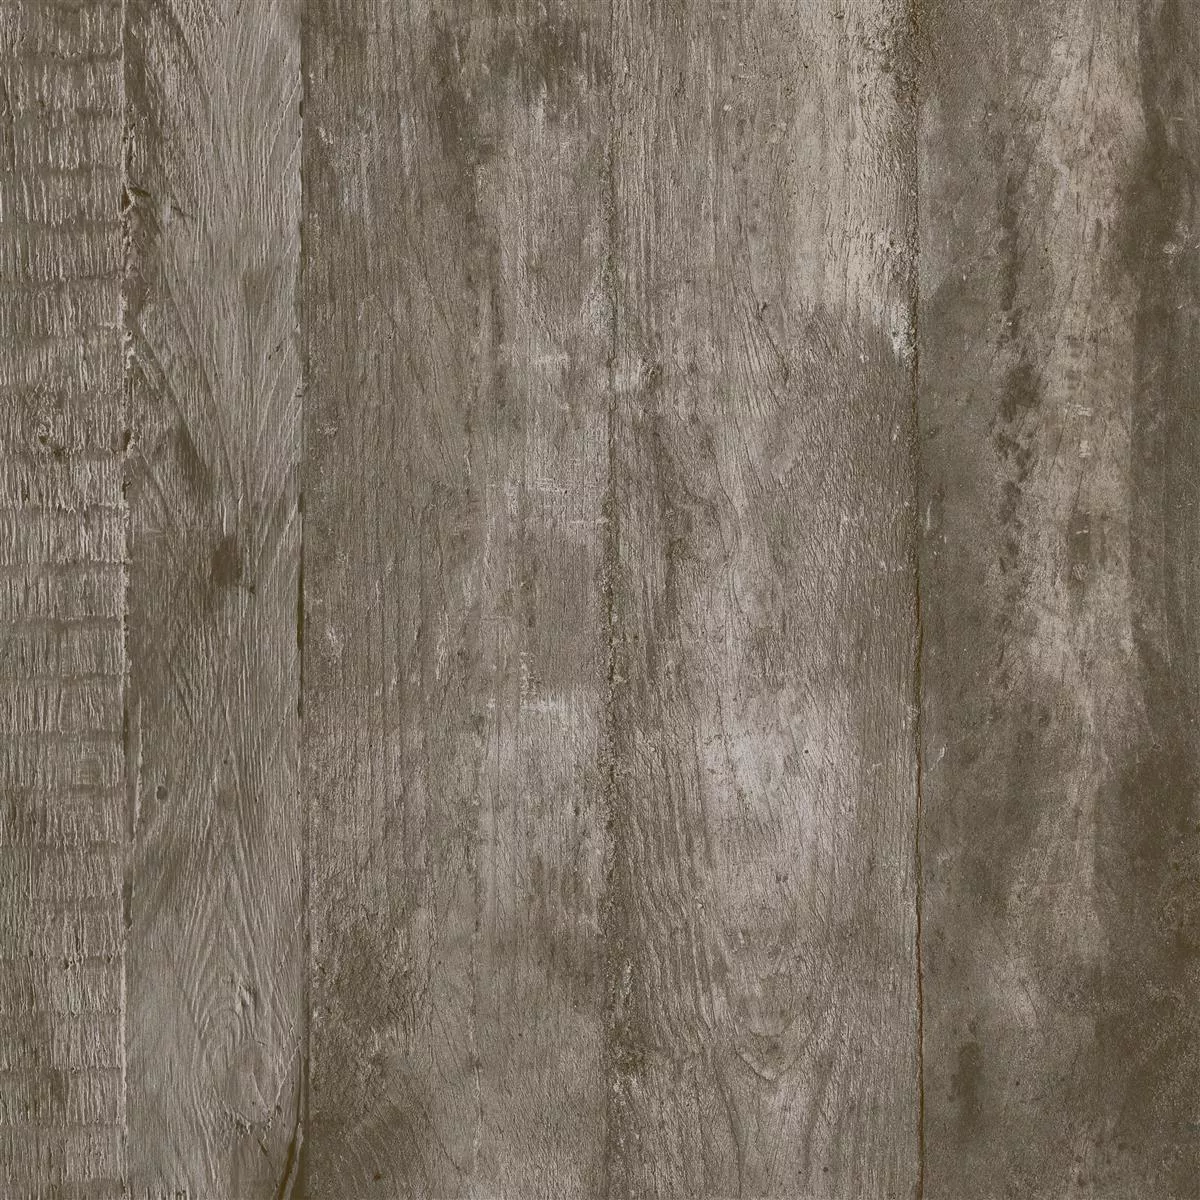 Płytki Podłogowe Gorki Wygląd Drewna 60x60cm Oszklony Brązowy